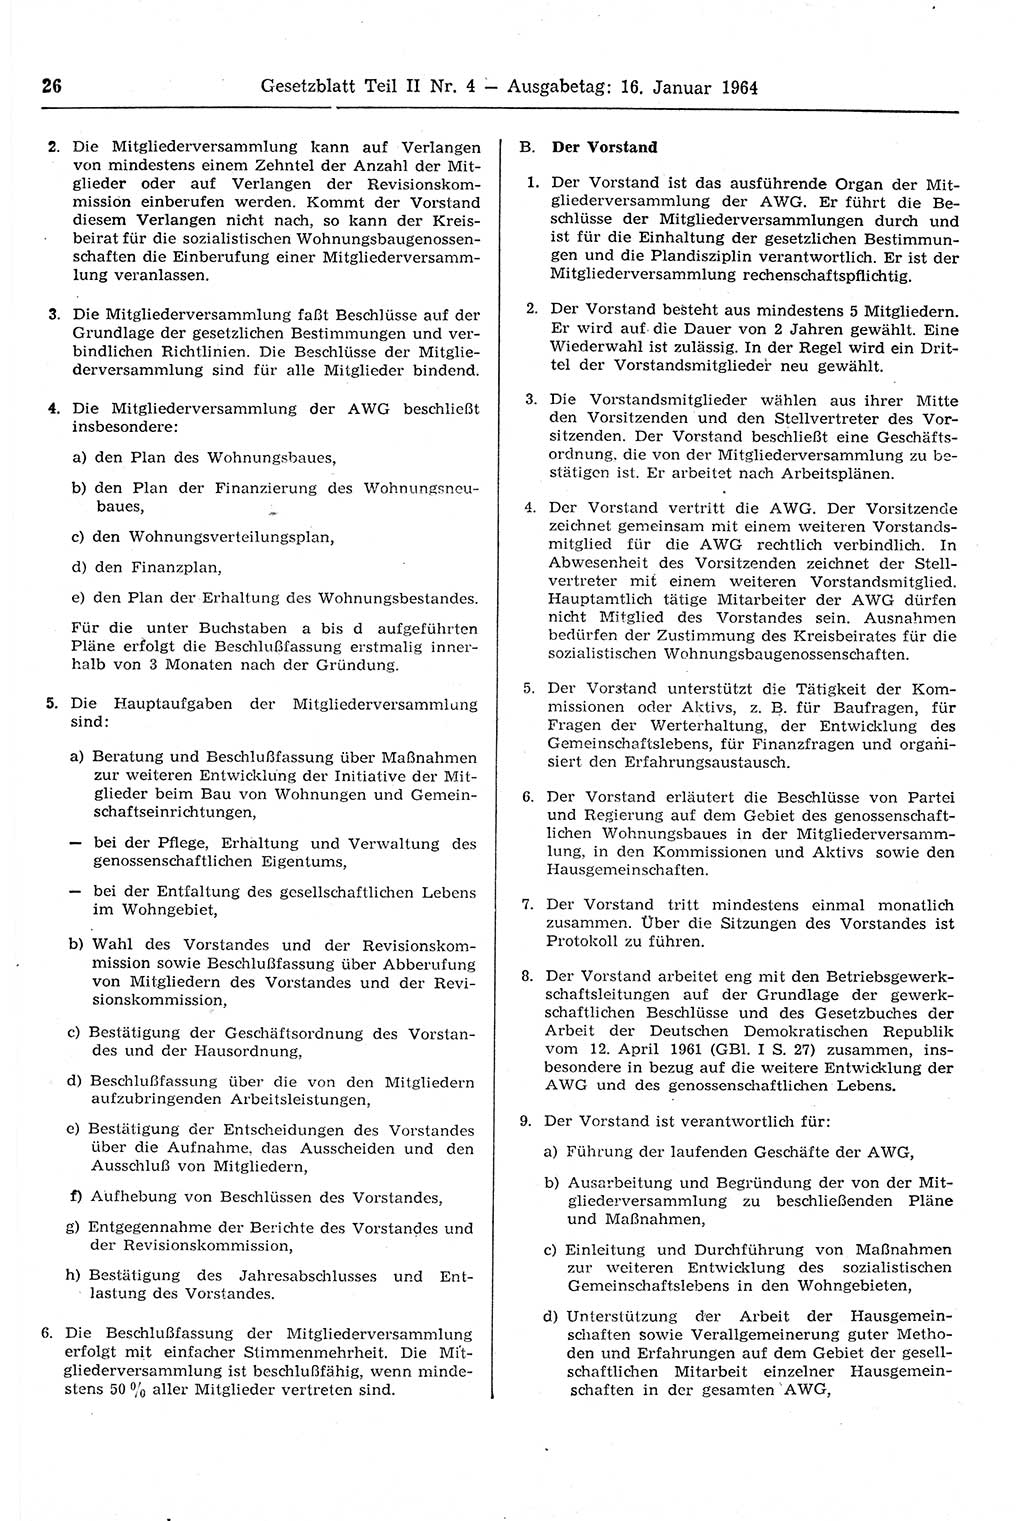 Gesetzblatt (GBl.) der Deutschen Demokratischen Republik (DDR) Teil ⅠⅠ 1964, Seite 26 (GBl. DDR ⅠⅠ 1964, S. 26)